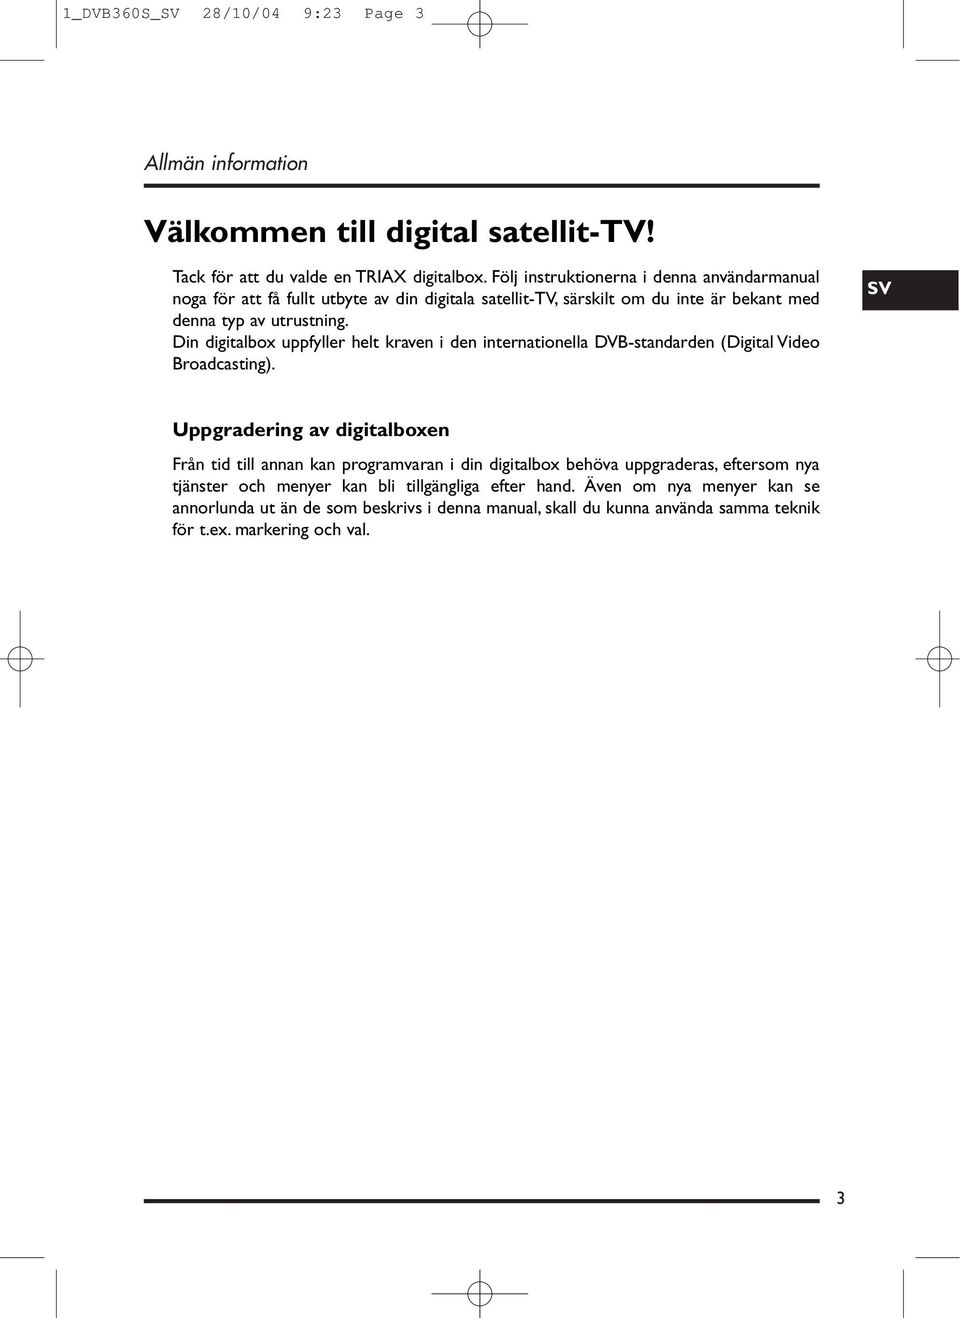 Din digitalbox uppfyller helt kraven i den internationella DVB-standarden (Digital Video Broadcasting).